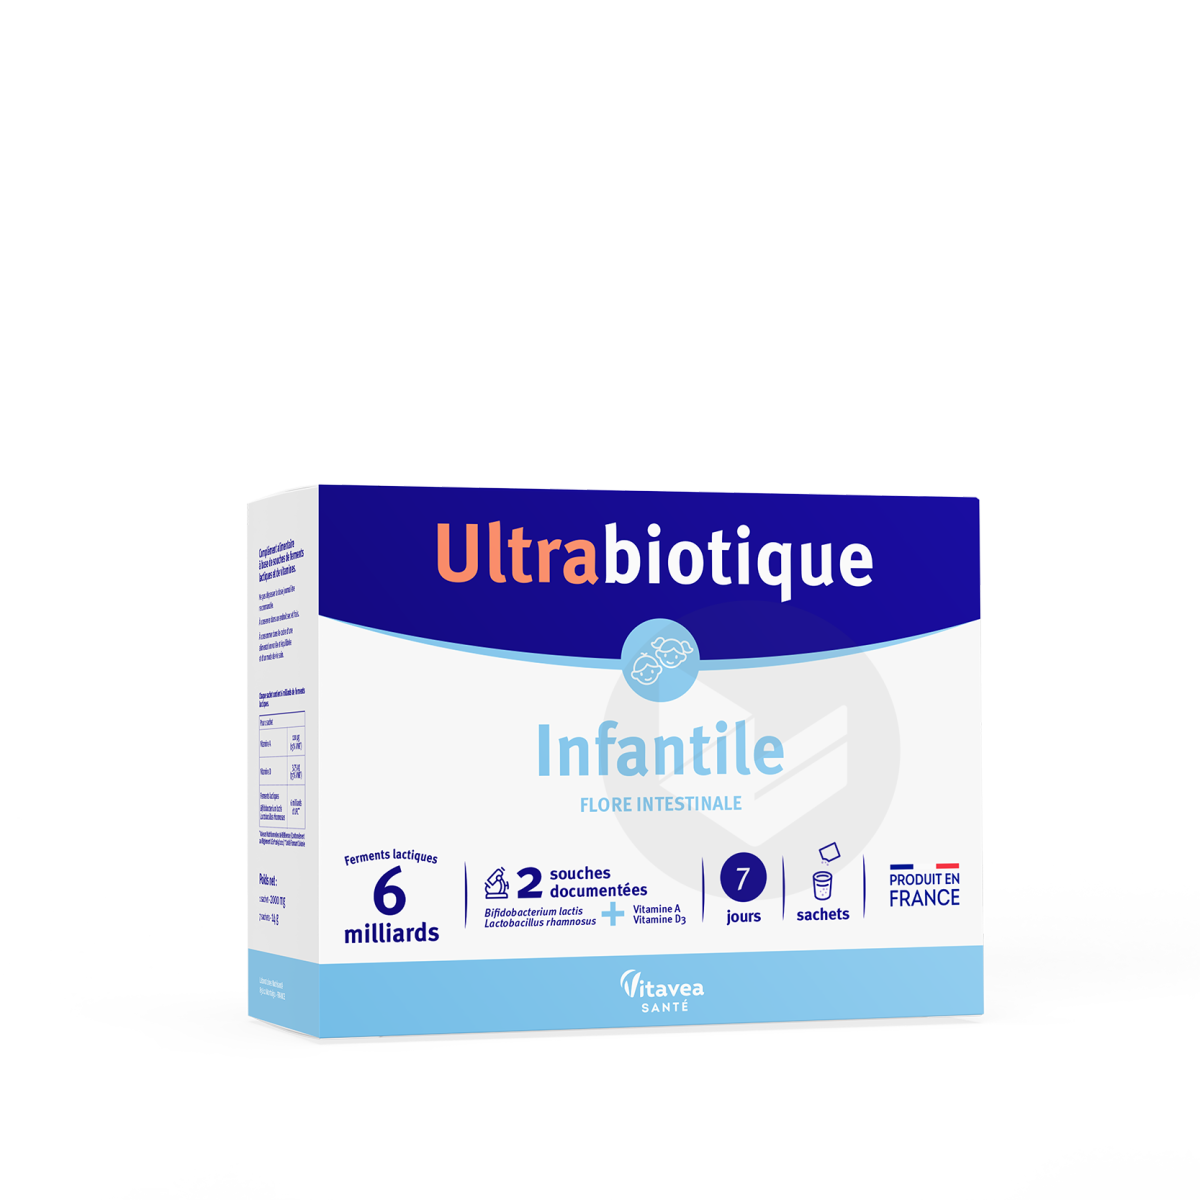 Ultrabiotique Infantile 7 sachets